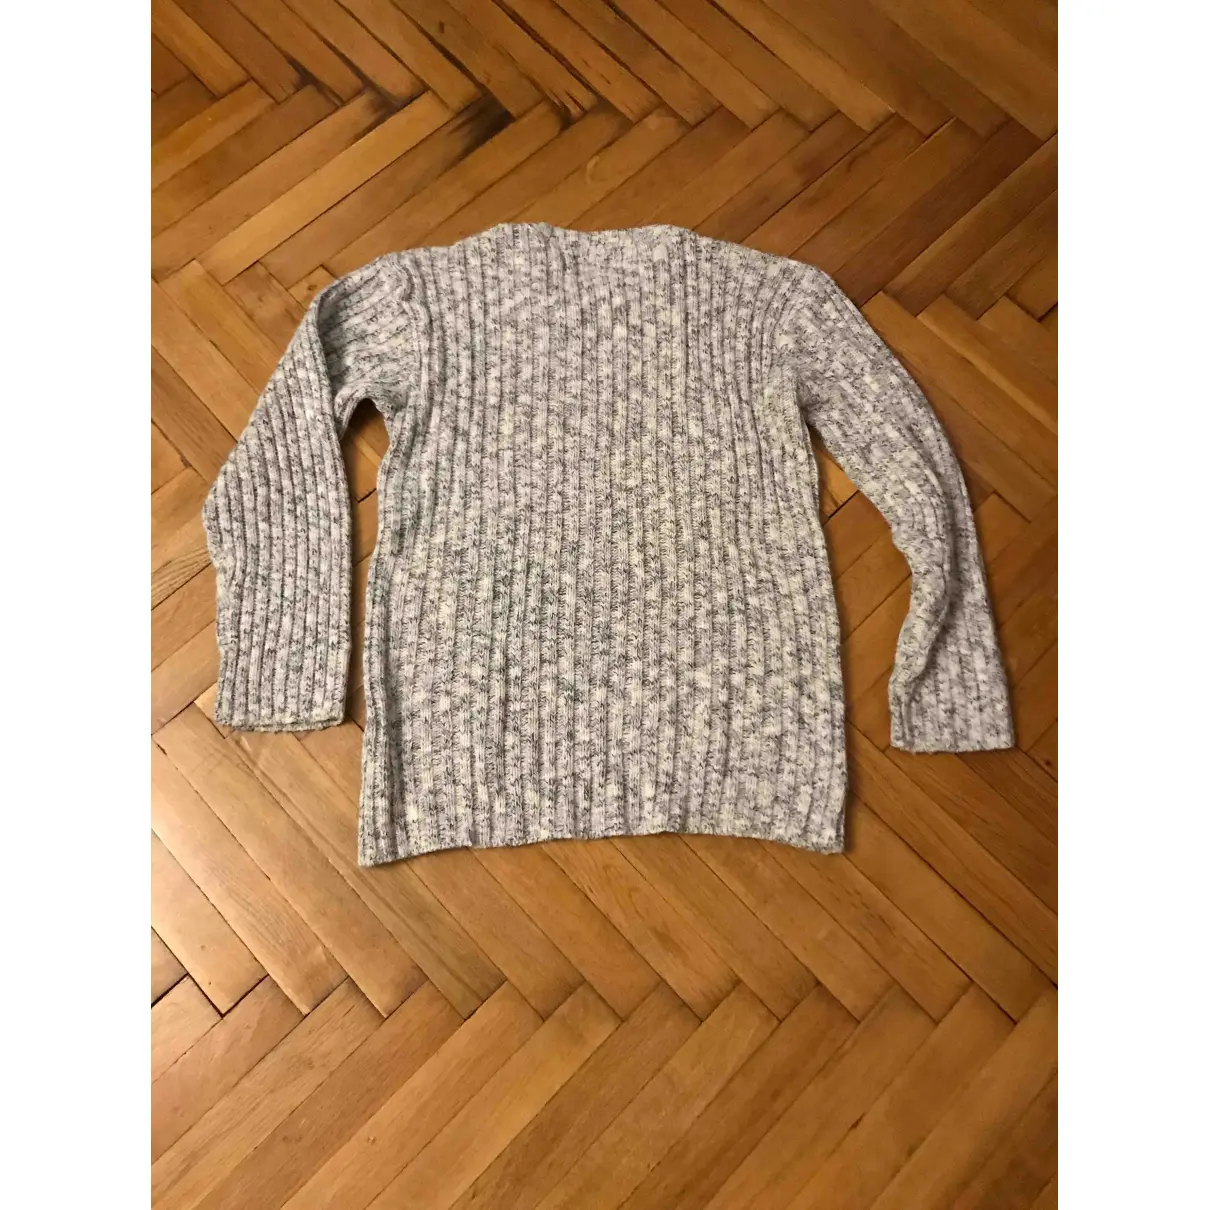 Buy Dolce & Gabbana Multicolour Cotton Knitwear & Sweatshirt online